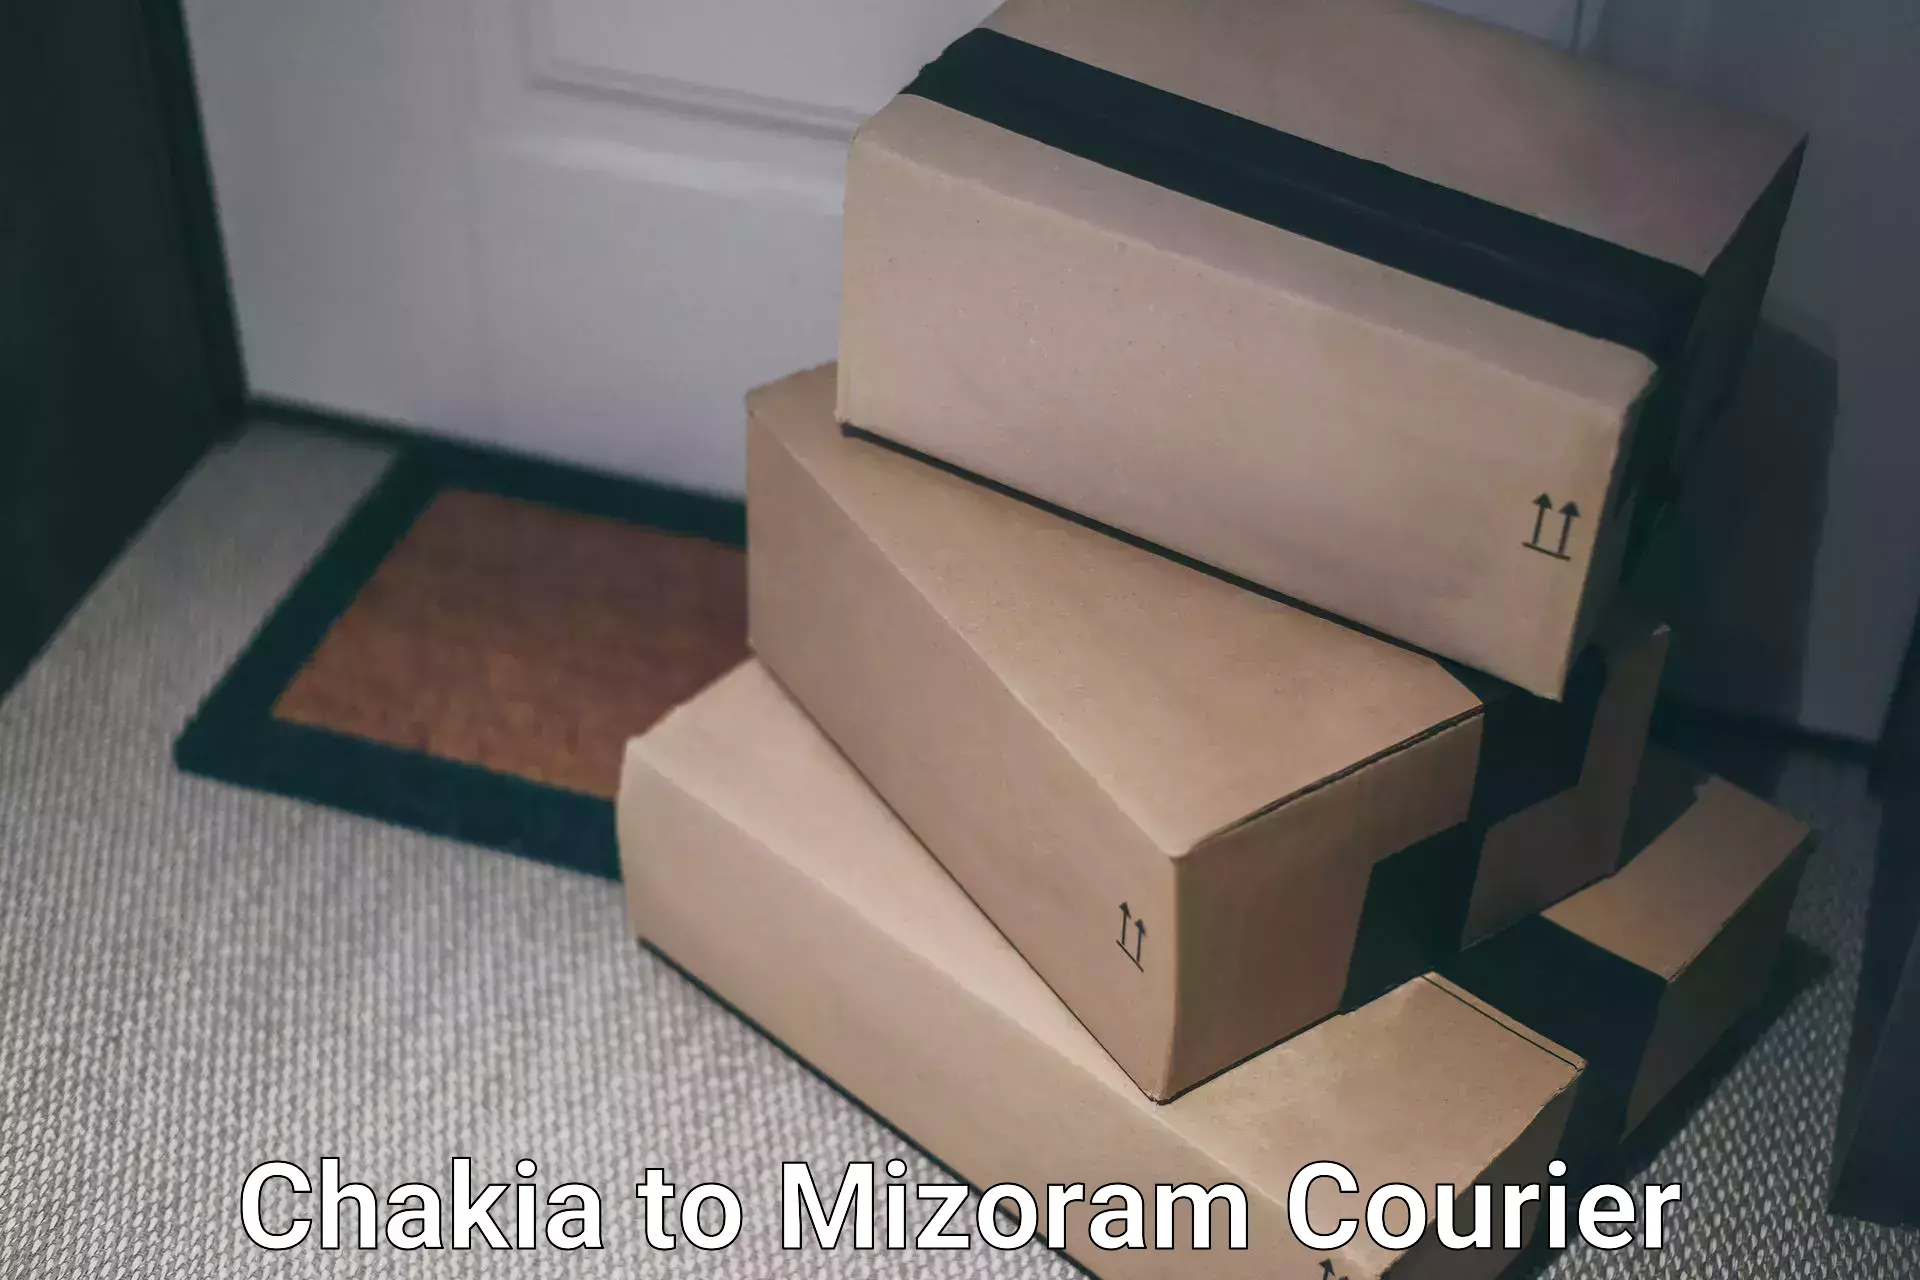 Optimized delivery routes Chakia to Khawzawl